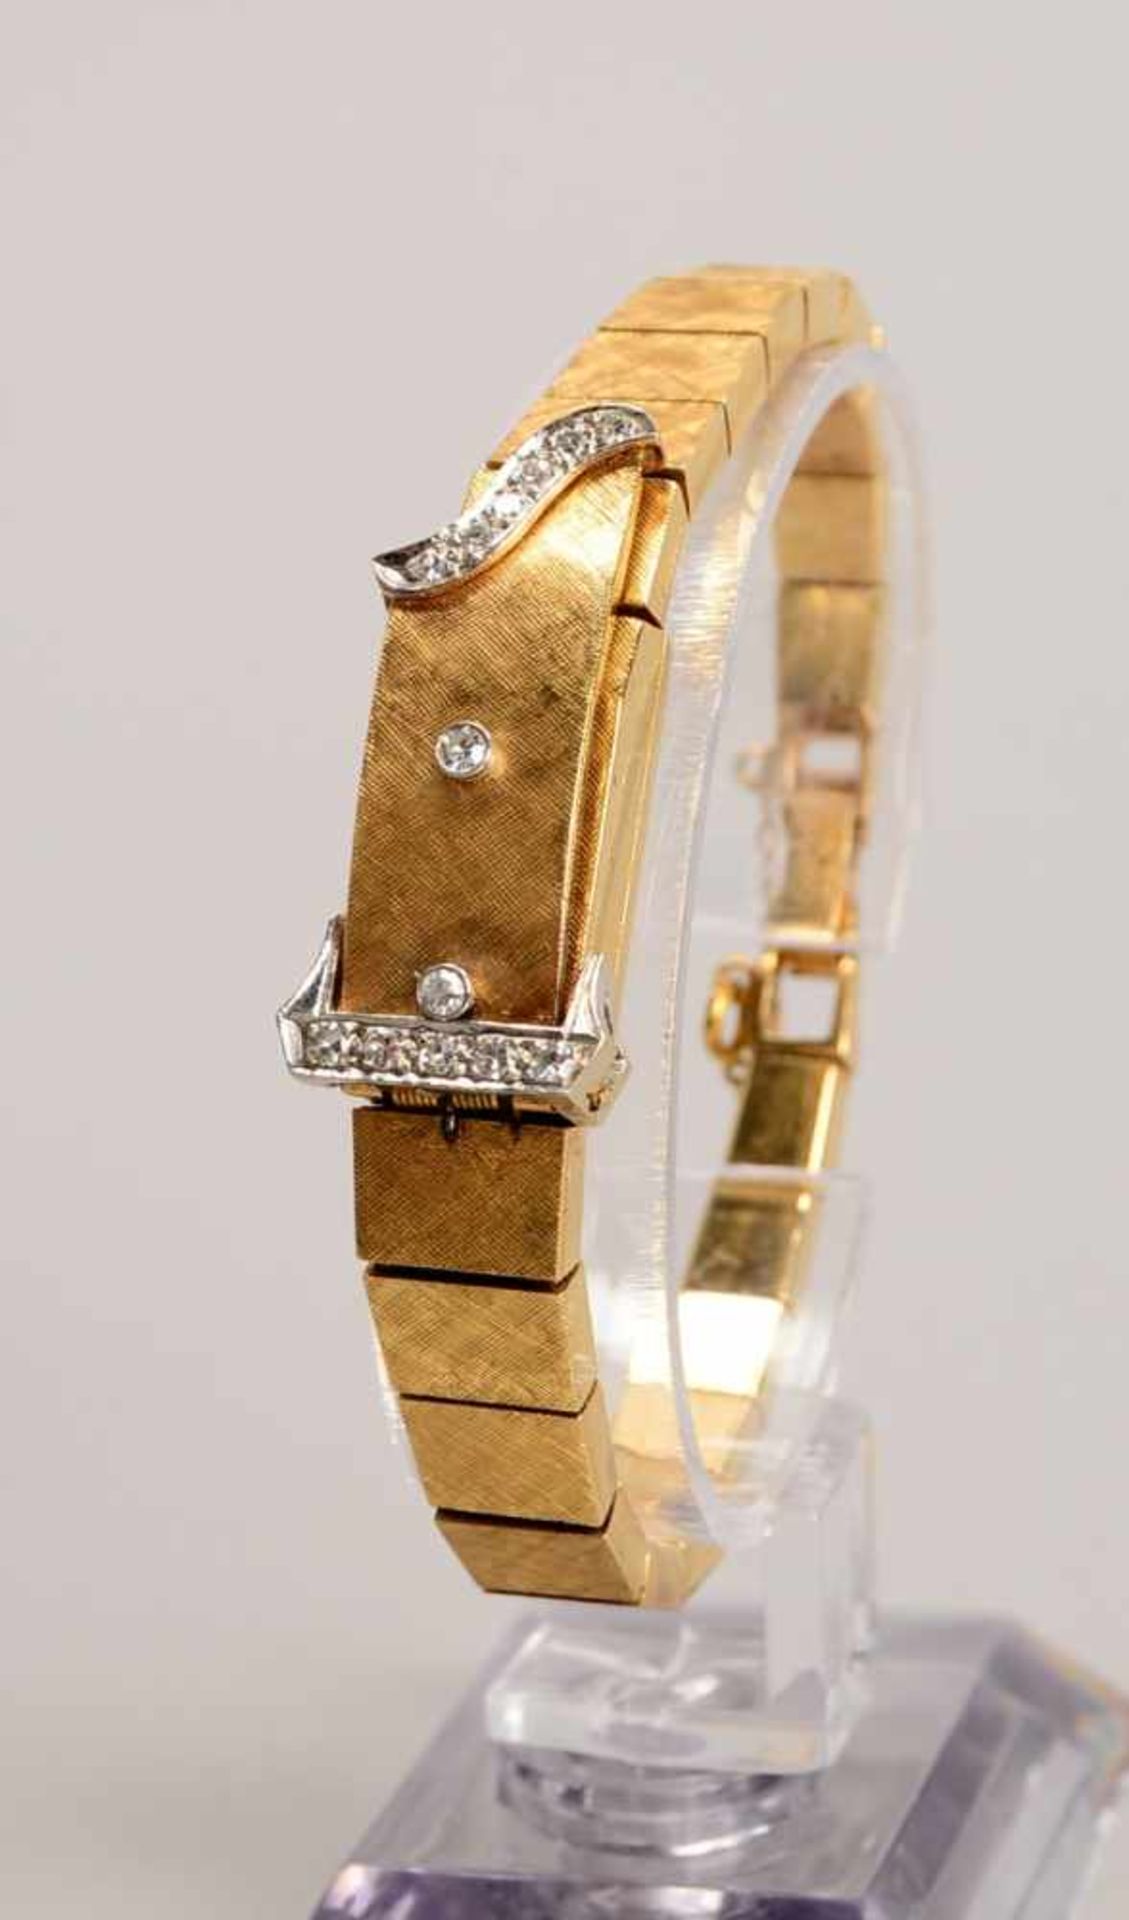 Damen-Armbanduhr, Moviga (auch als Armband tragbar), 14 kt GG/WG, mit Brillantbesatz, mit